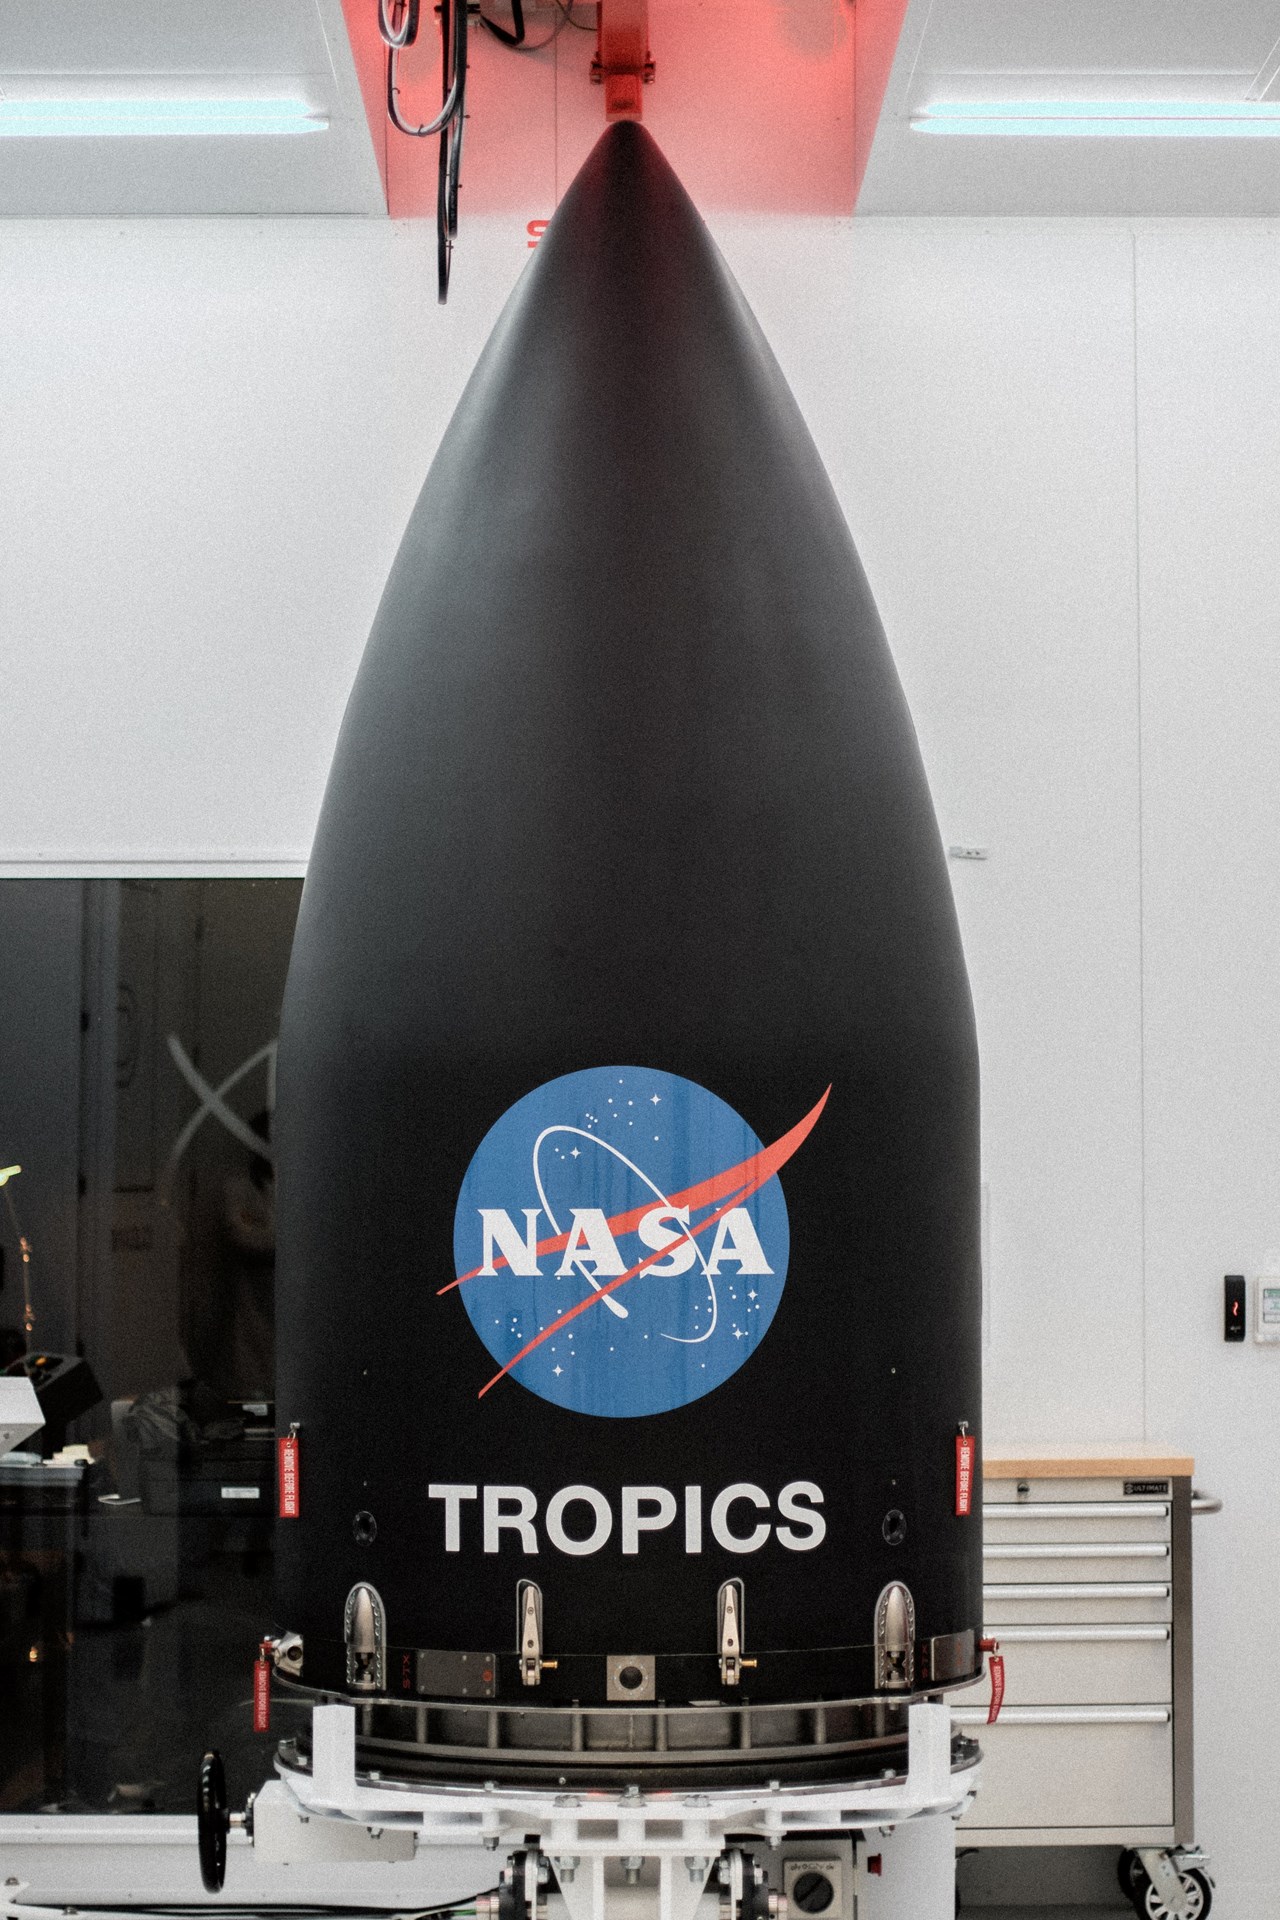 (GÜNCELLENMİŞ) NASA’nın TROPICS misyonunun lansmanı hava durumu nedeniyle ertelendi